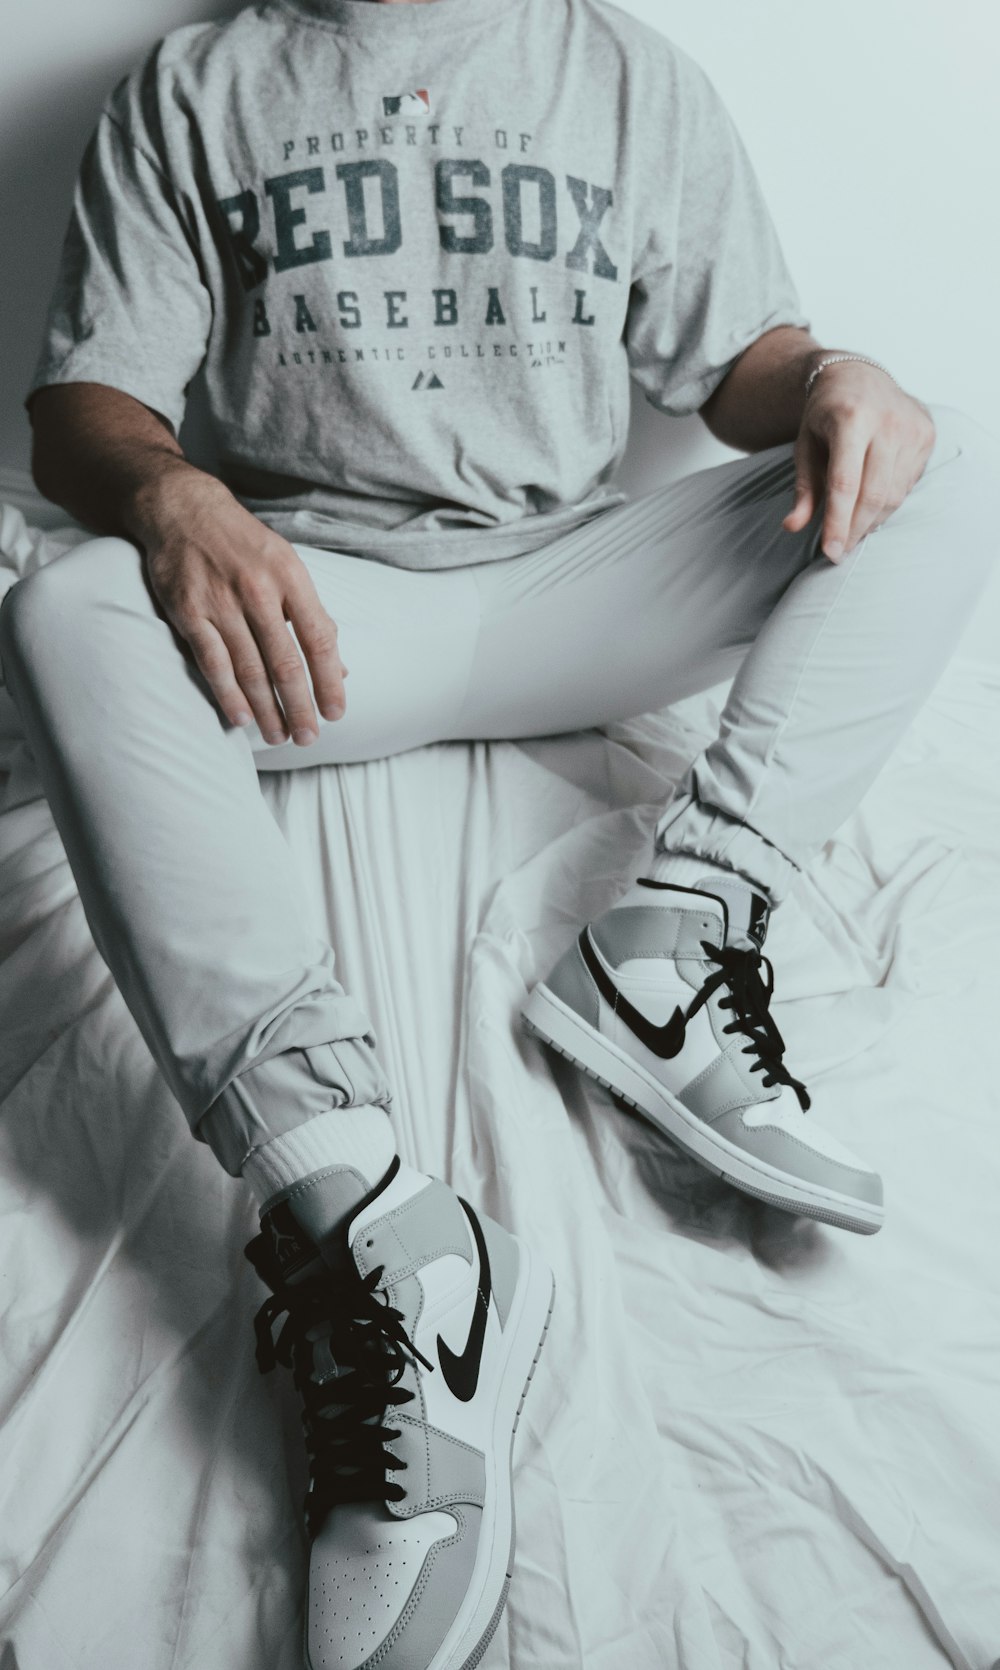 Persona con camisa gris y pantalones blancos con zapatillas Nike blancas y negras